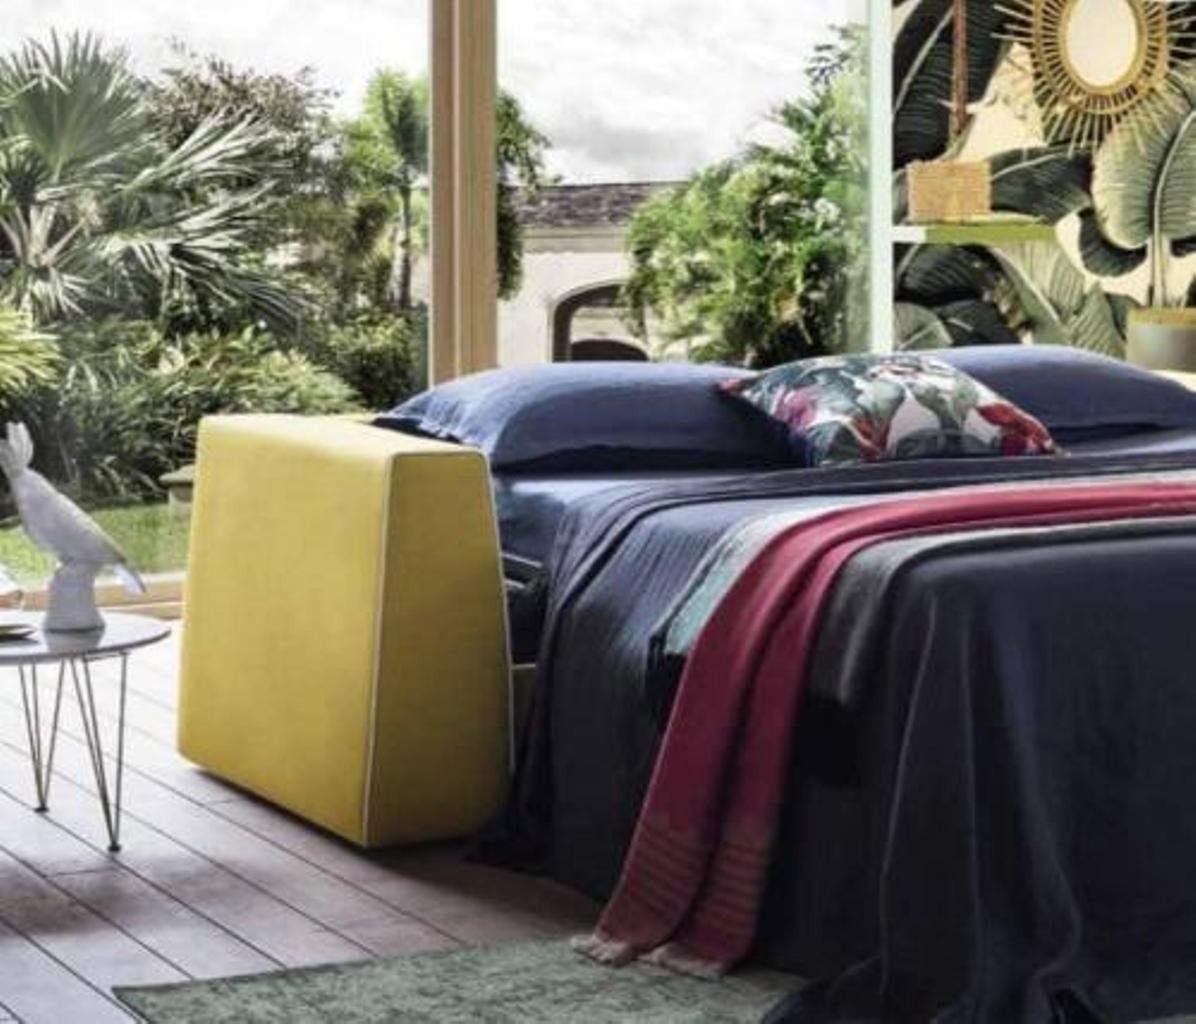 Europe Sofa Design Made Wohnzimmer Gelb Sitzer Alfitalia Stoff 3 3-Sitzer Couch, in JVmoebel